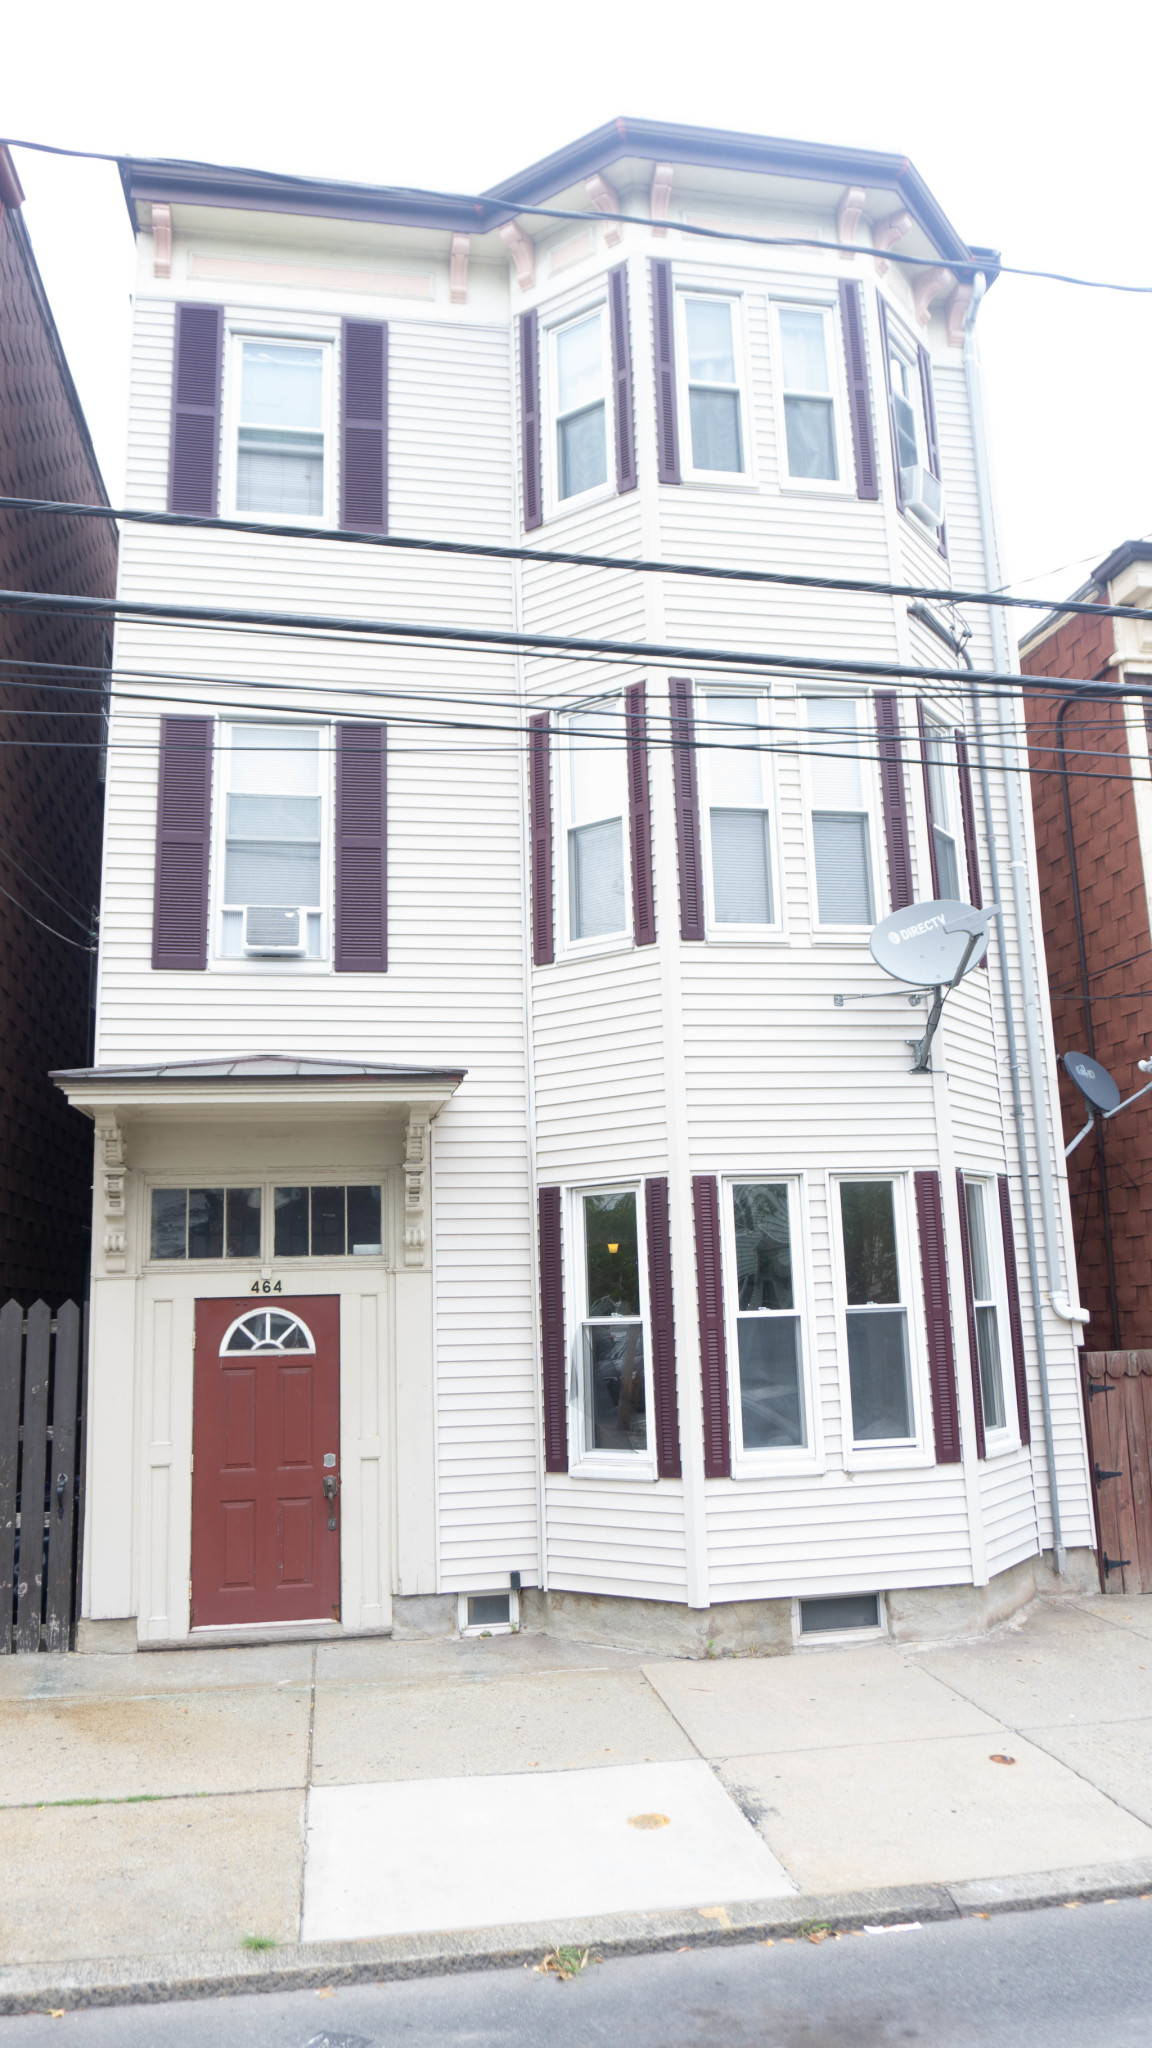 Photos of apartment on Addison,Boston MA 02128